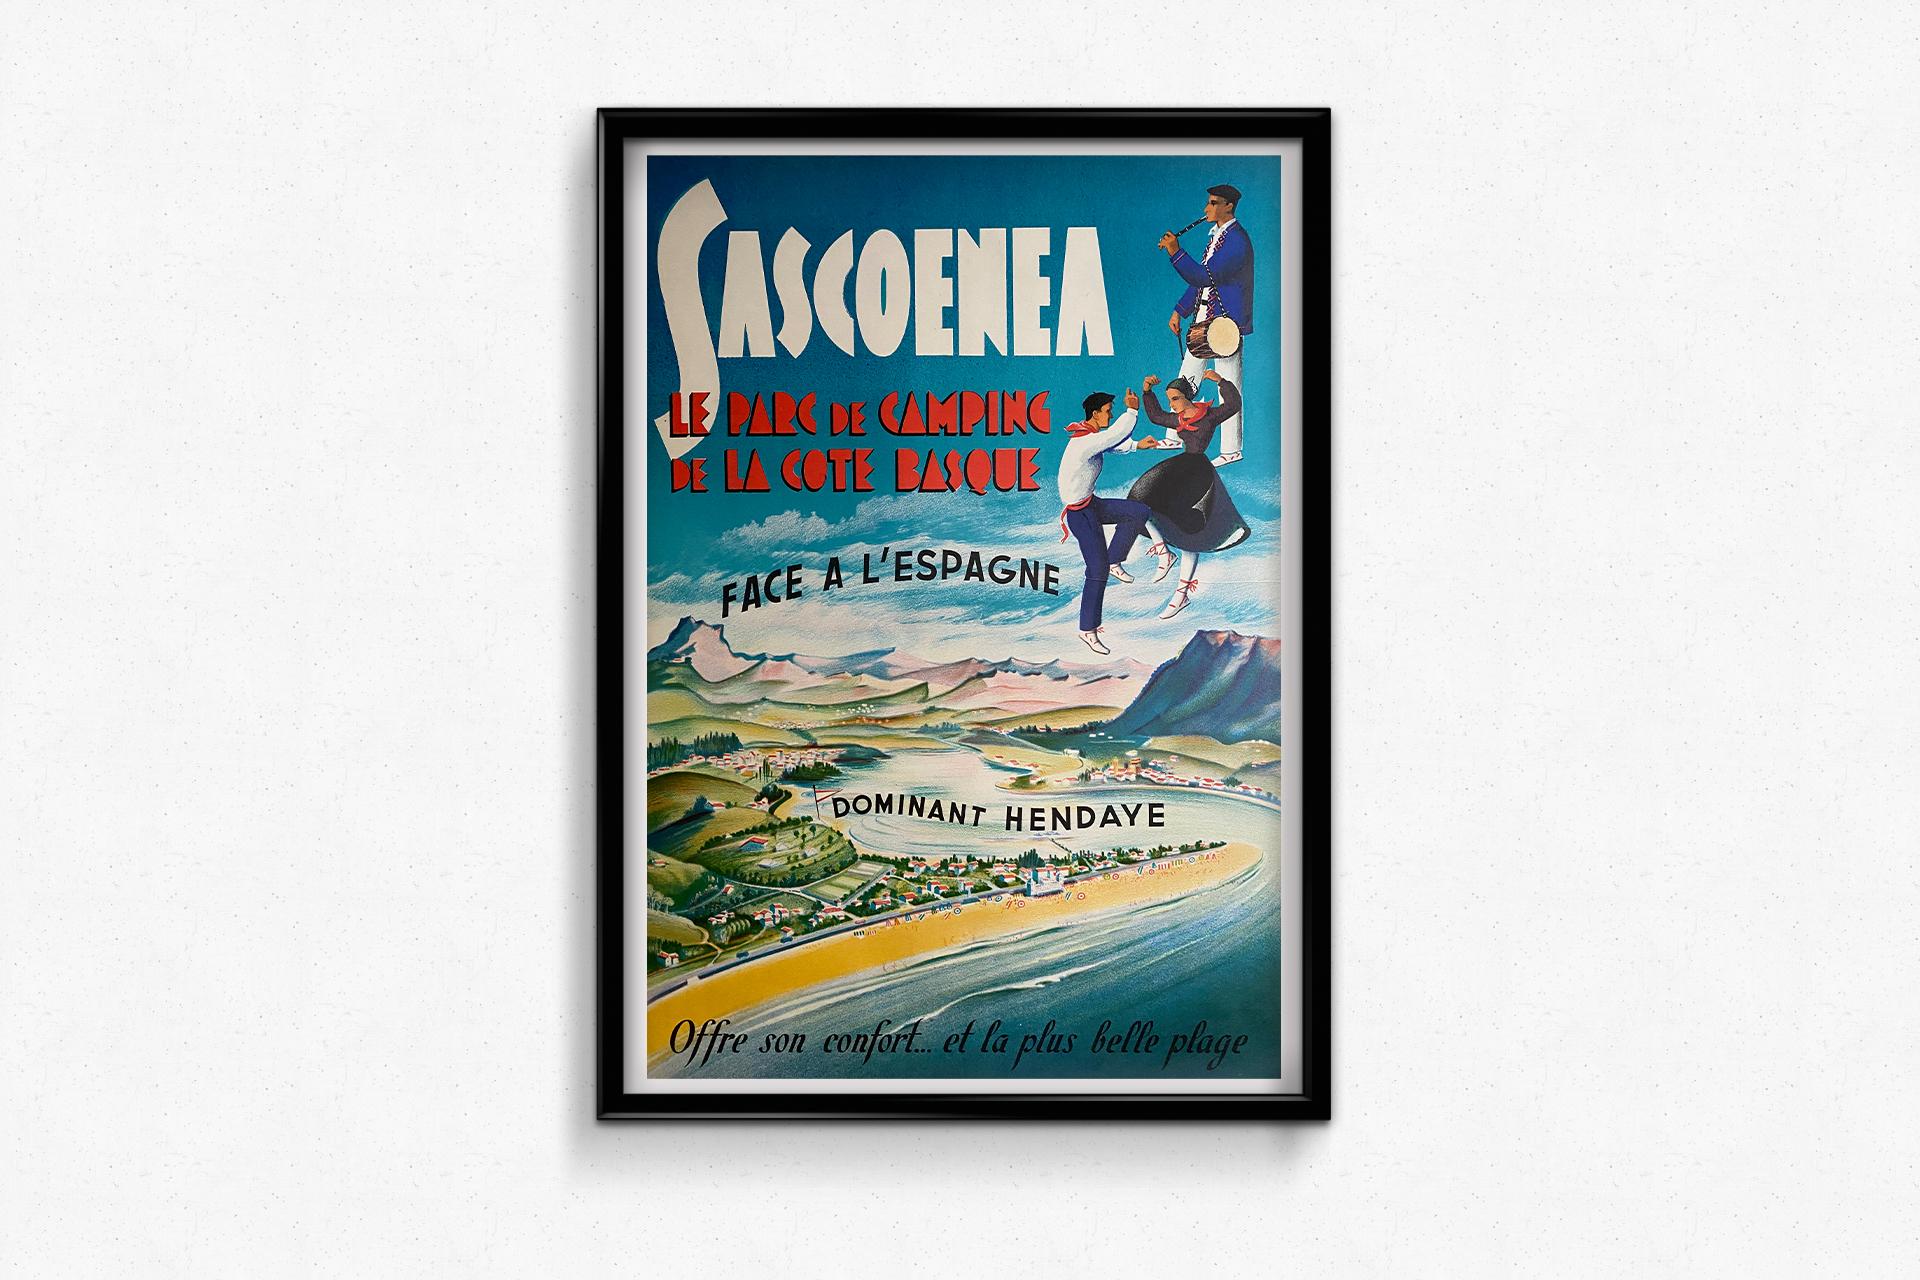 Très belle affiche touristique réalisée pour promouvoir le camping Sascoenea qui est situé dans la ville d'Hendaye.

Hendaye est une ville du Pays basque français, dans le département des Pyrénées-Atlantiques, en région Nouvelle-Aquitaine. Elle se